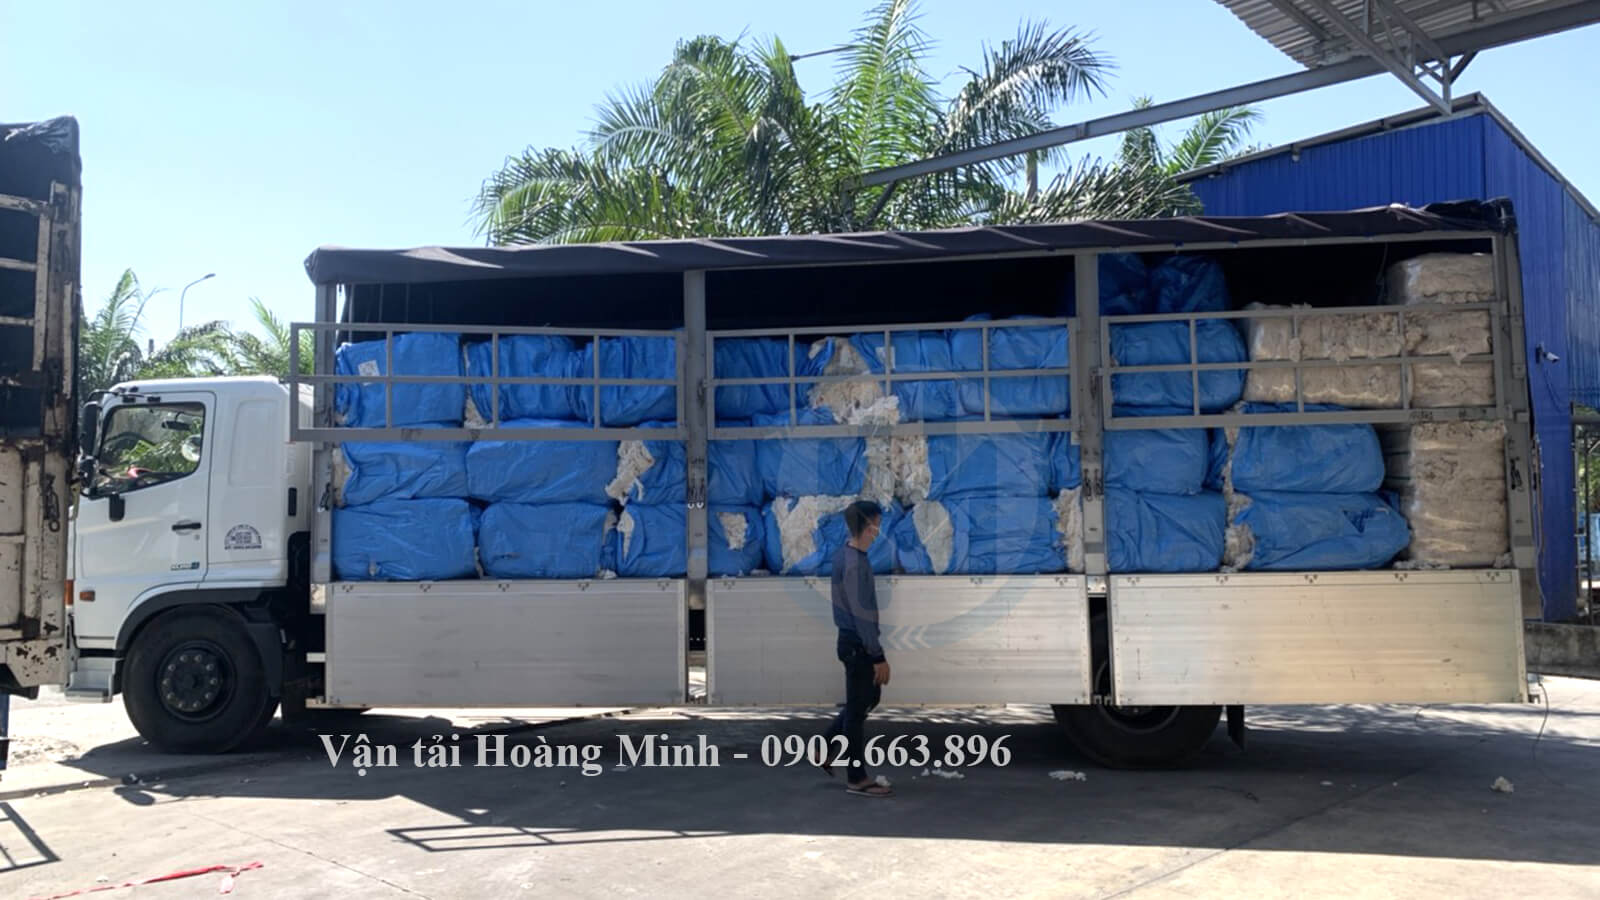 Hình ảnh xe tải Hoàng Minh vận chuyển hàng bao bì cho khách đi các tỉnh.jpg